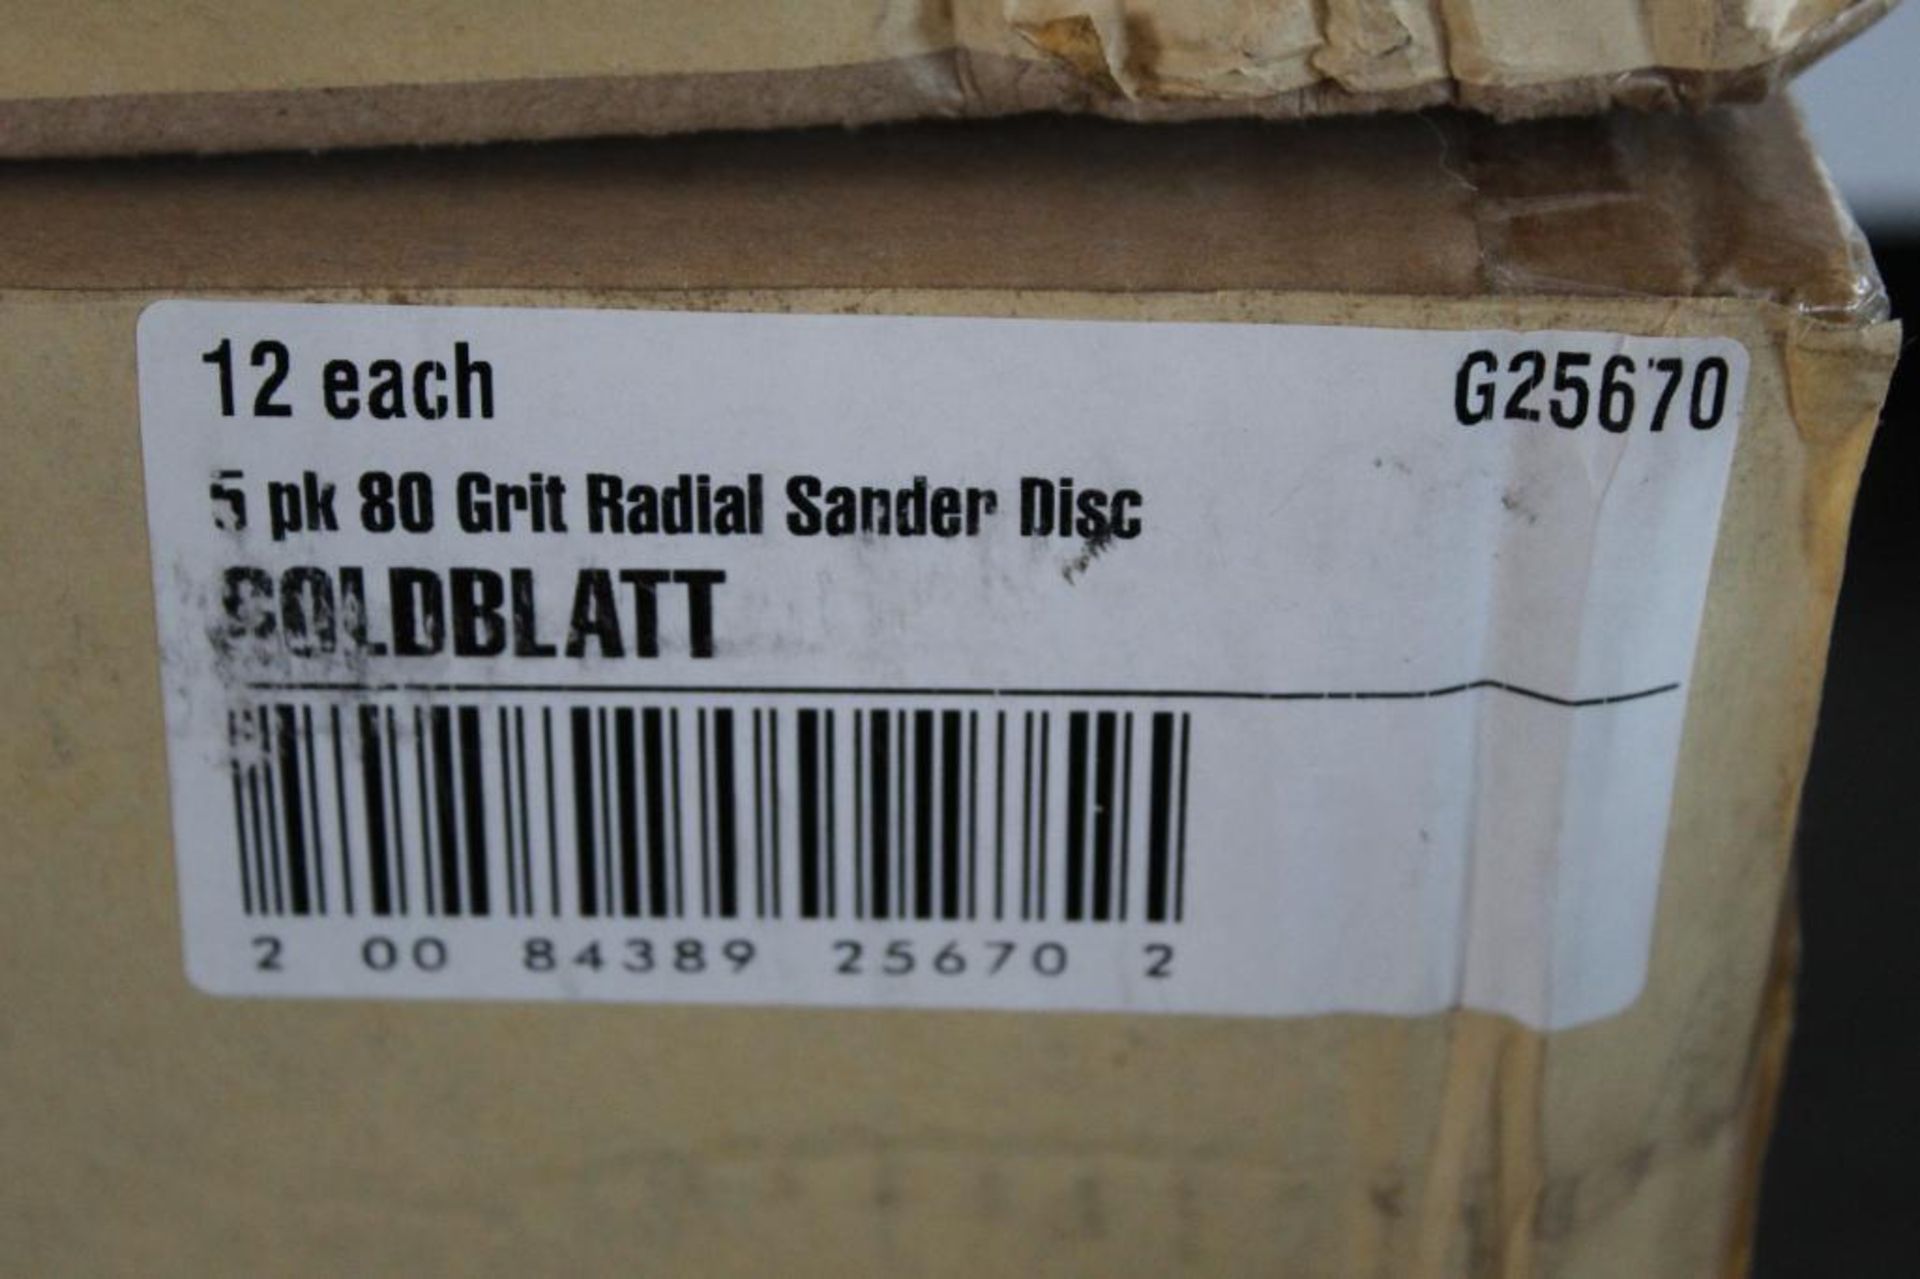 (2) Boxes (12 each) 5pack 80 Grit Goldblatt Radial Sander Disc 9in # G25670 - Image 3 of 4